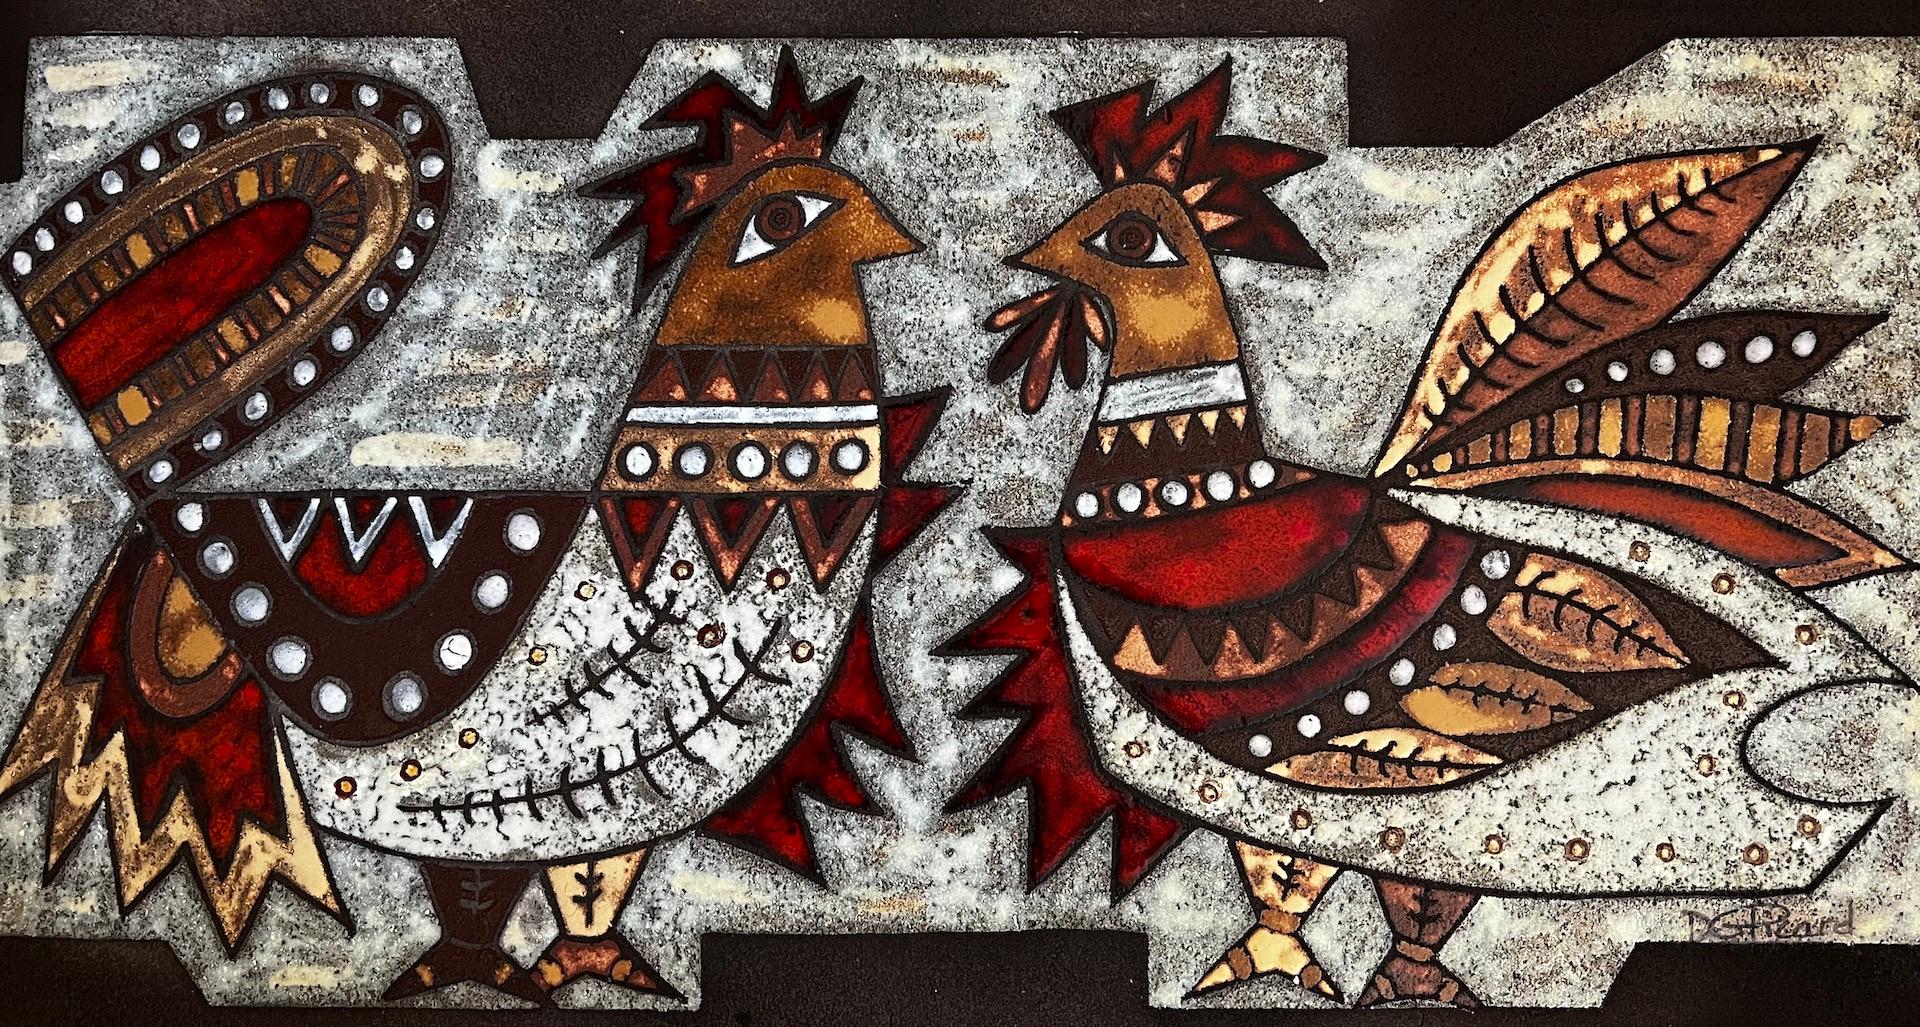 Dekorative Plakette von Max und Dominique PICARD, VALLAURIS - 1960er Jahre
 (signiert unten rechts). Emaillierte Lava mit Hahnenmotiven: schöne tiefe Rottöne. Großes Format, Wandbehang auf der Rückseite.
In perfektem Zustand: keine